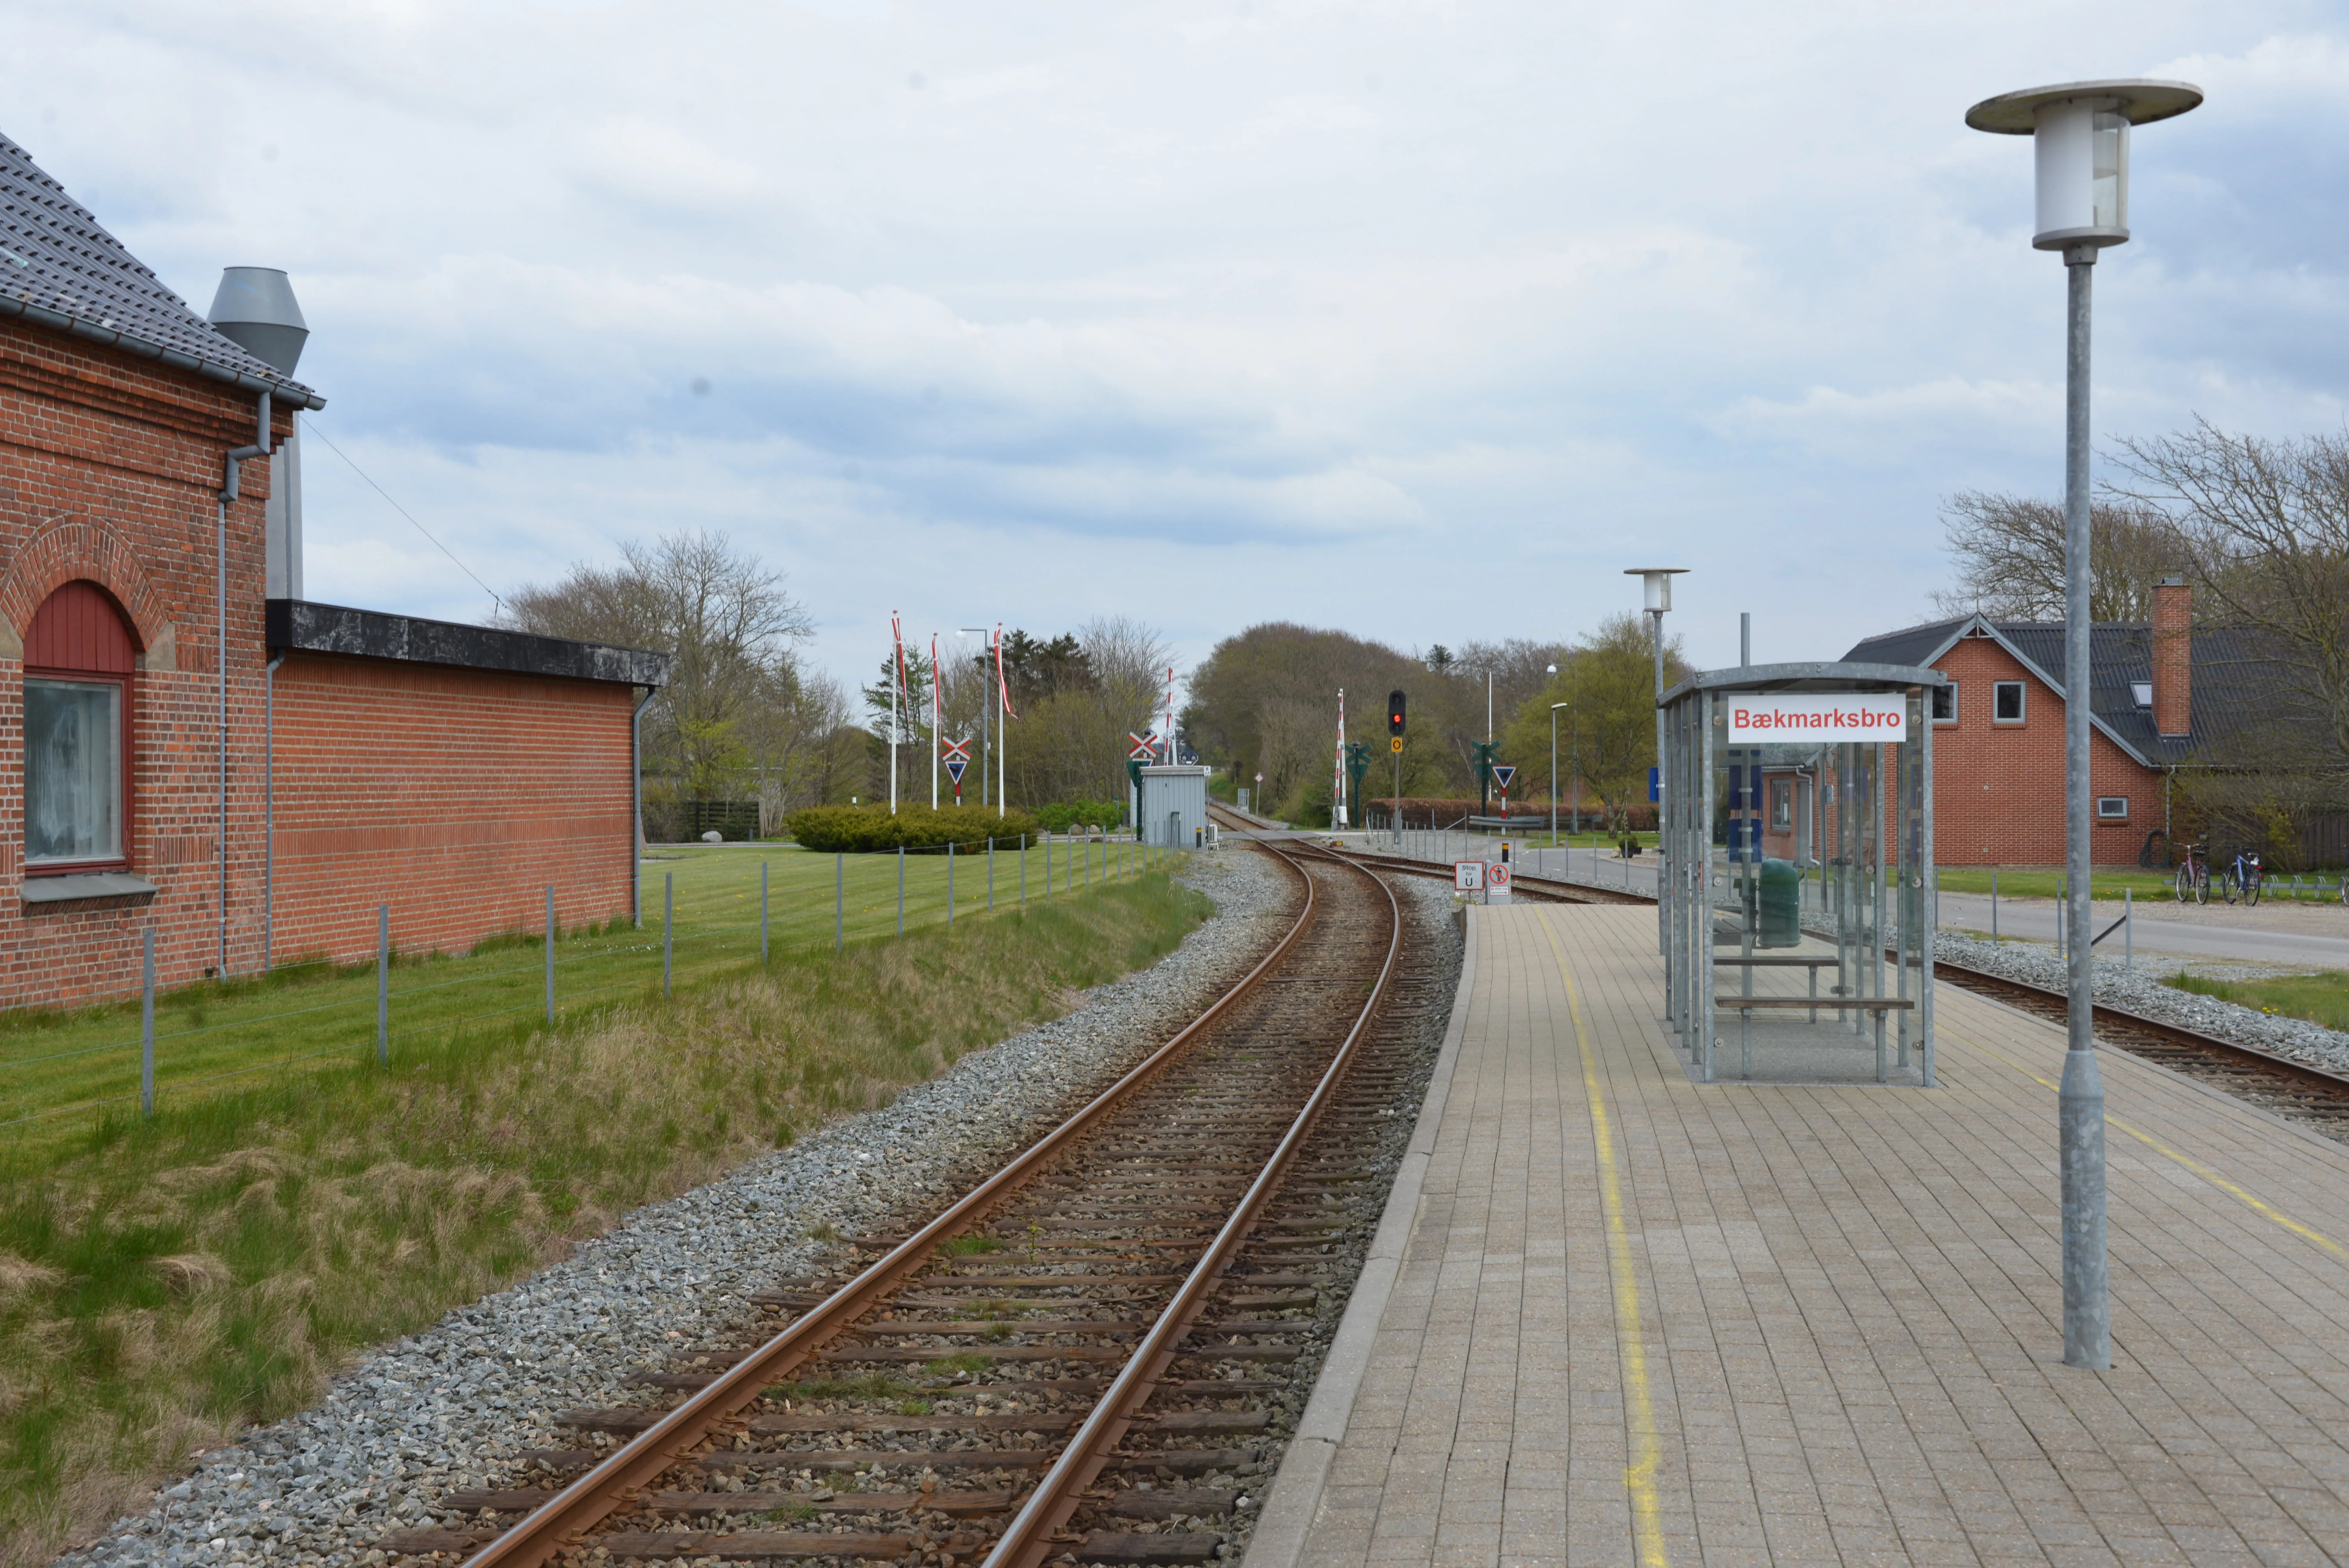 Billede af Bækmarksbro Station.